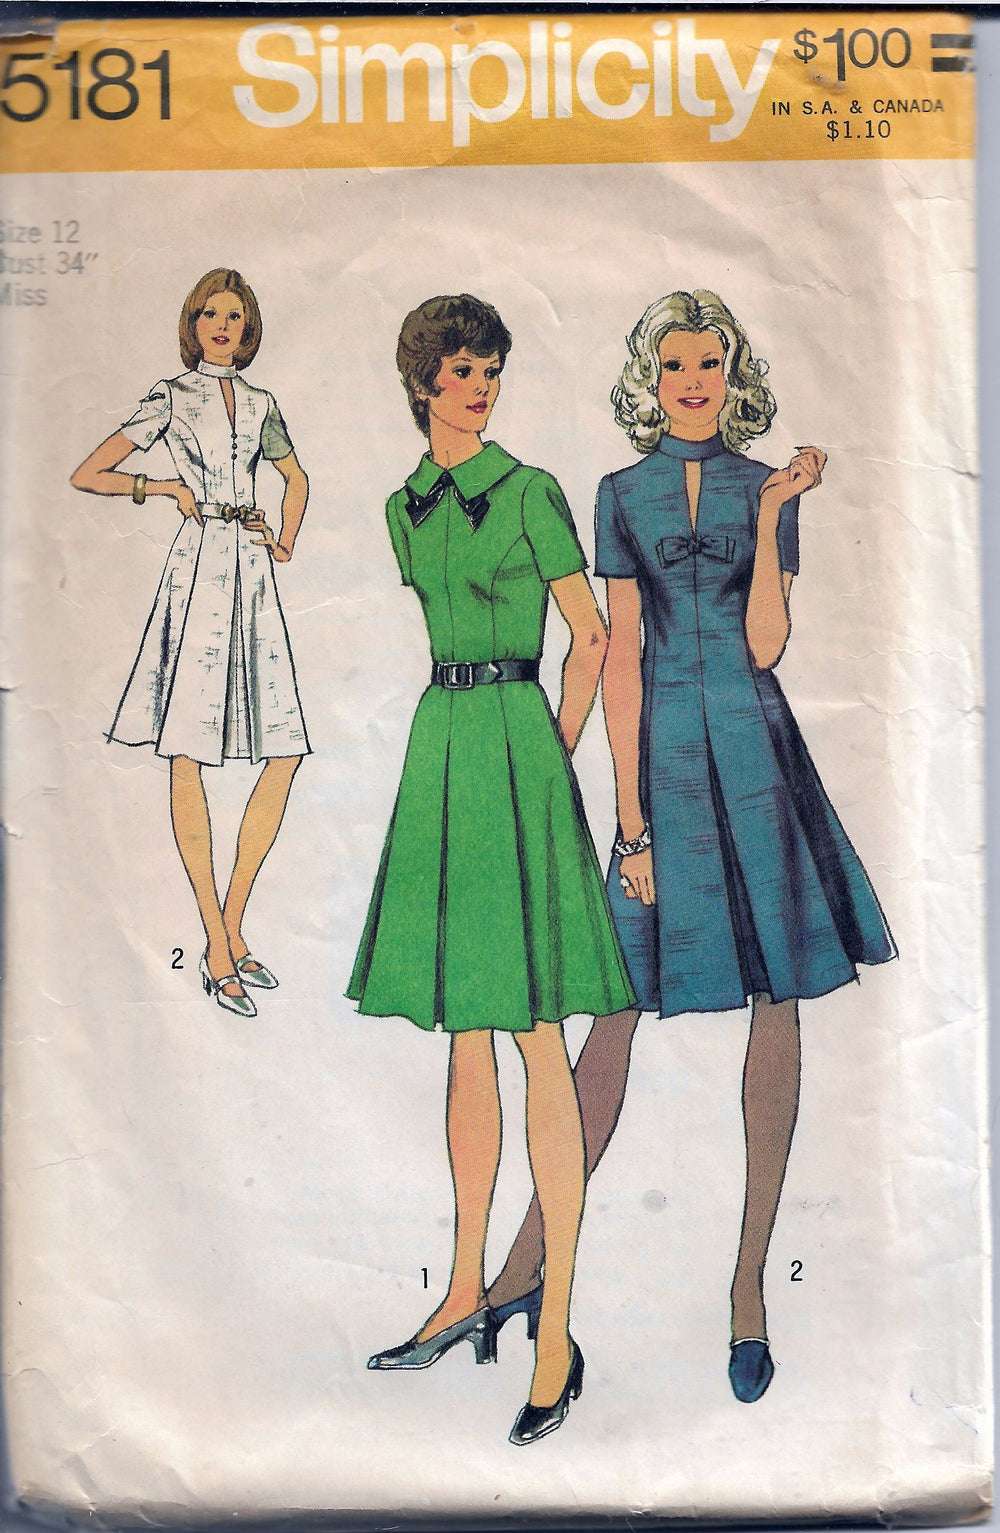 Simplicity 5181 Ladies Dress Vintage Sewing Pattern 1970s - VintageStitching - Vintage Sewing Patterns